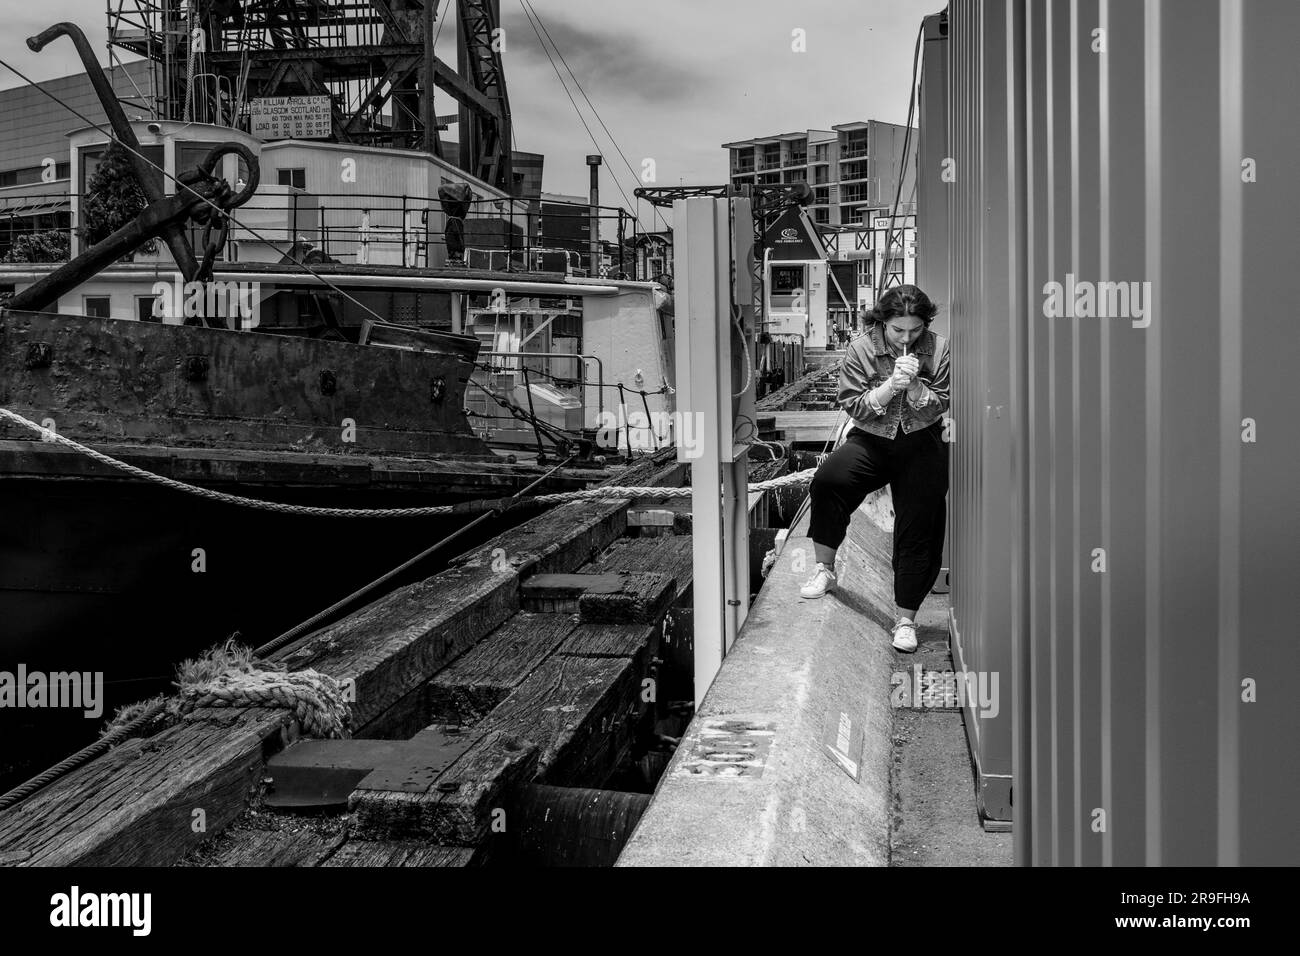 Eine junge Frau nimmt eine heimliche Zigarette hinter einem Container in der Hafengegend von Wellington, New Zealand Capital City. Foto: Rob Watkins Stockfoto